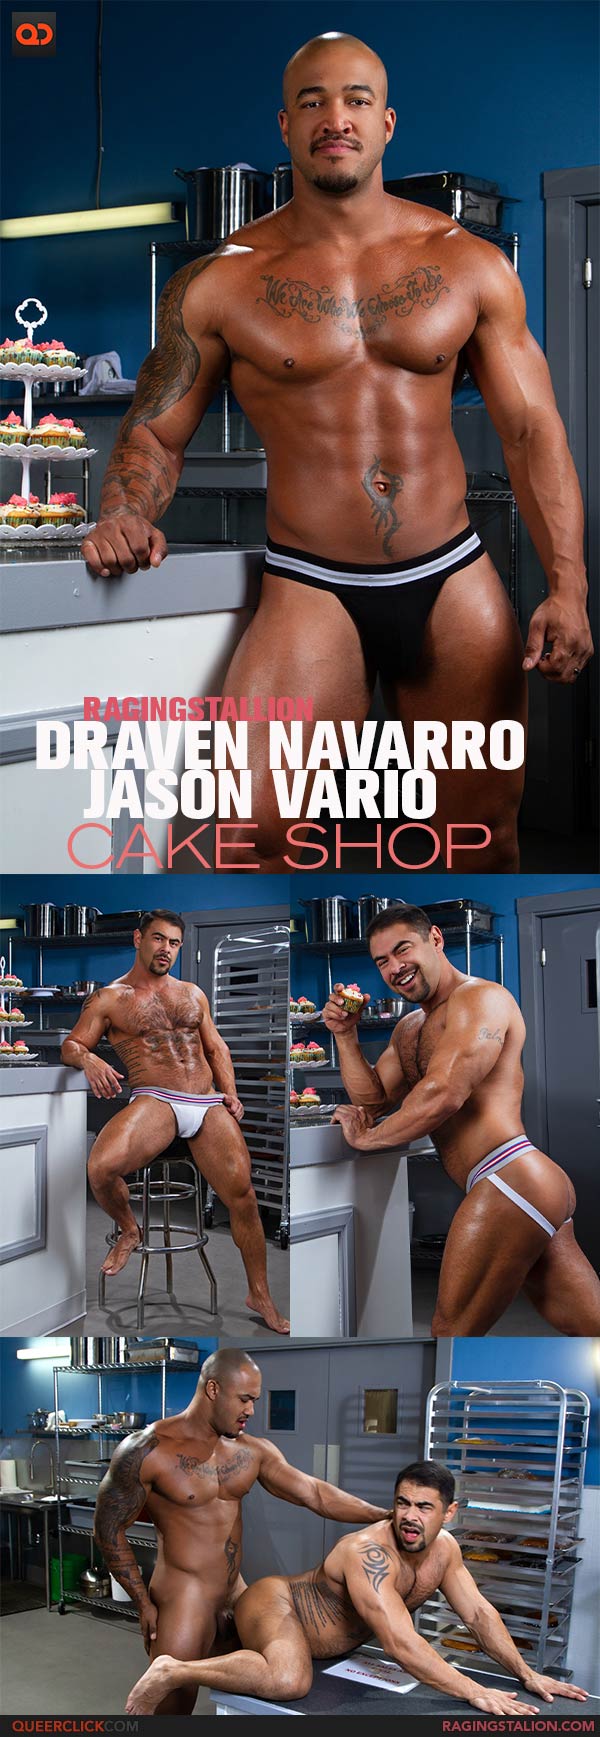 RagingStallion: Jason Vario and Draven Navarro